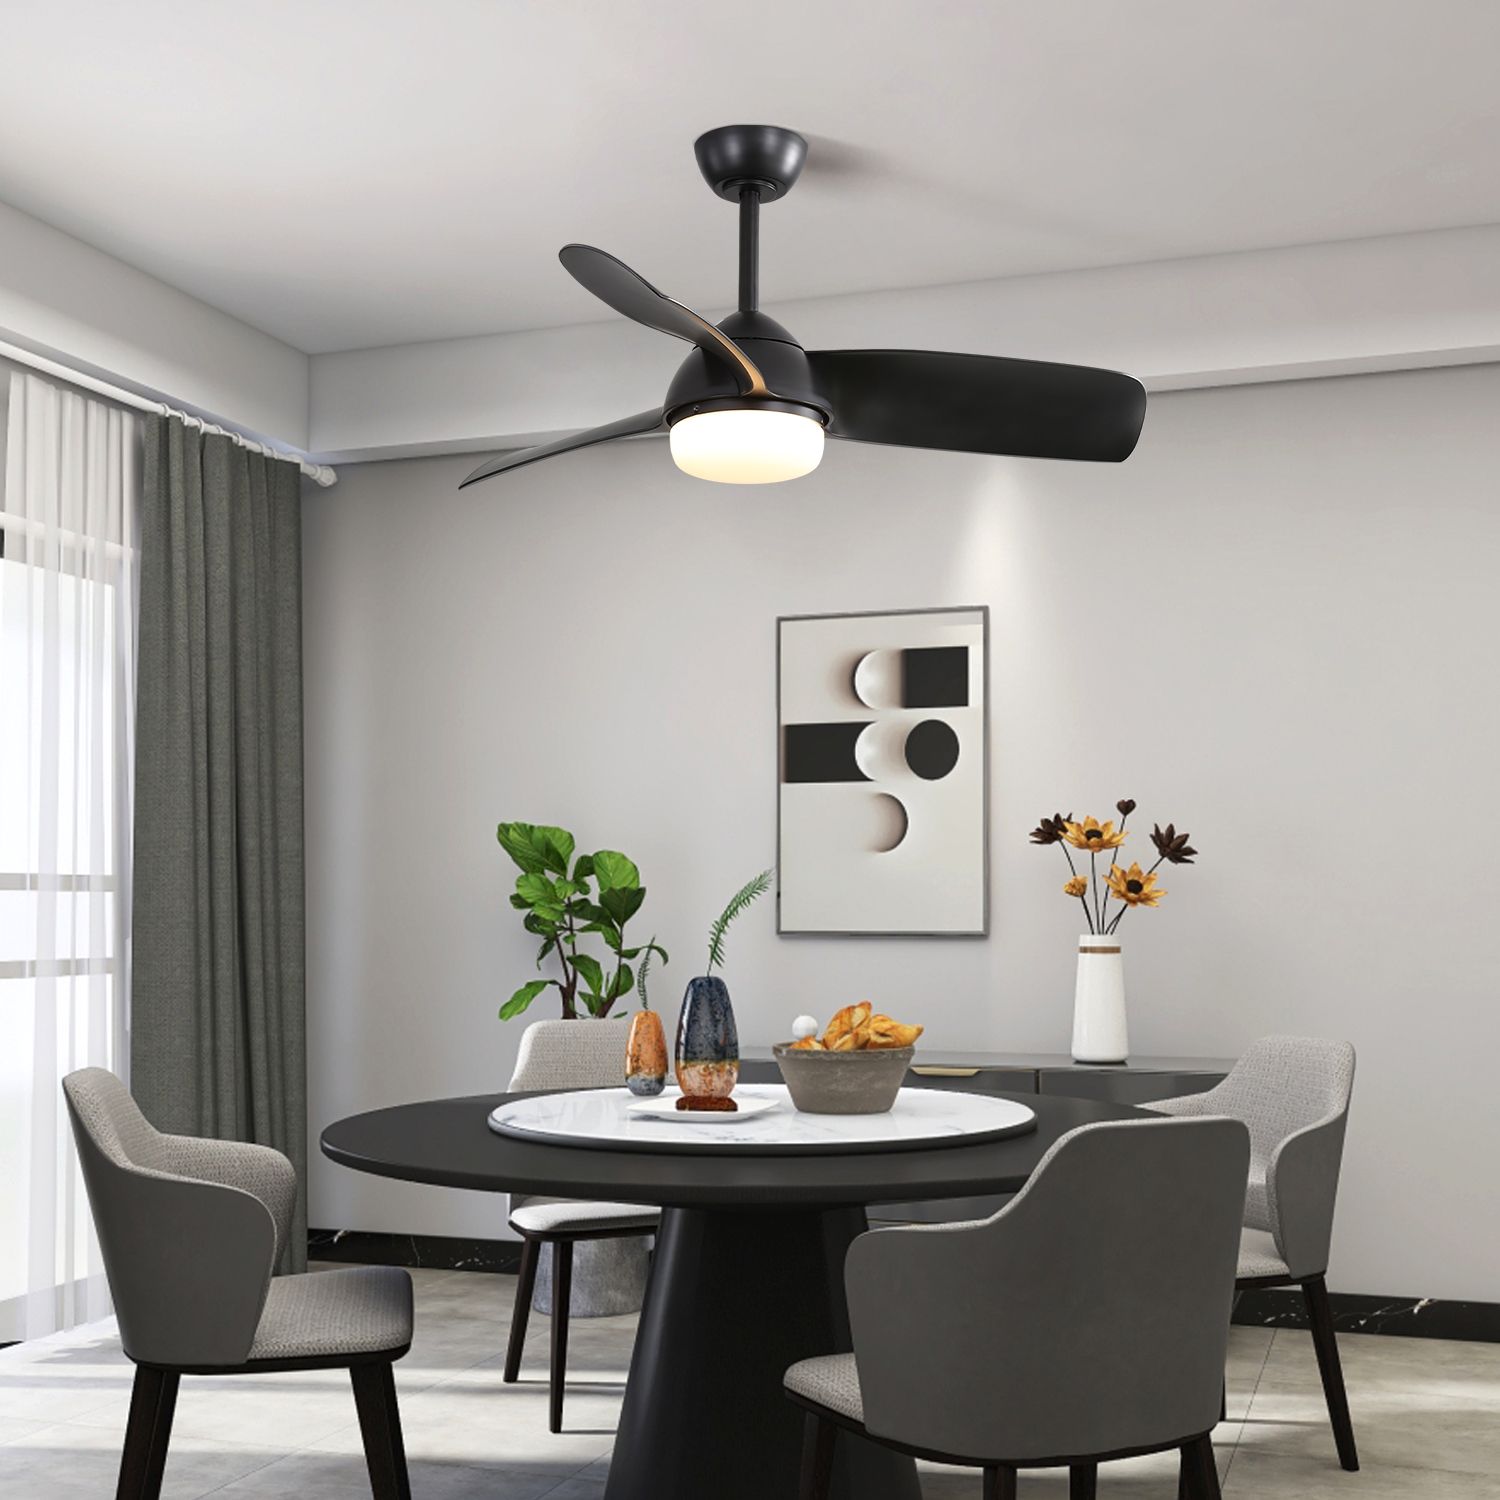 black modern fan with light in a room